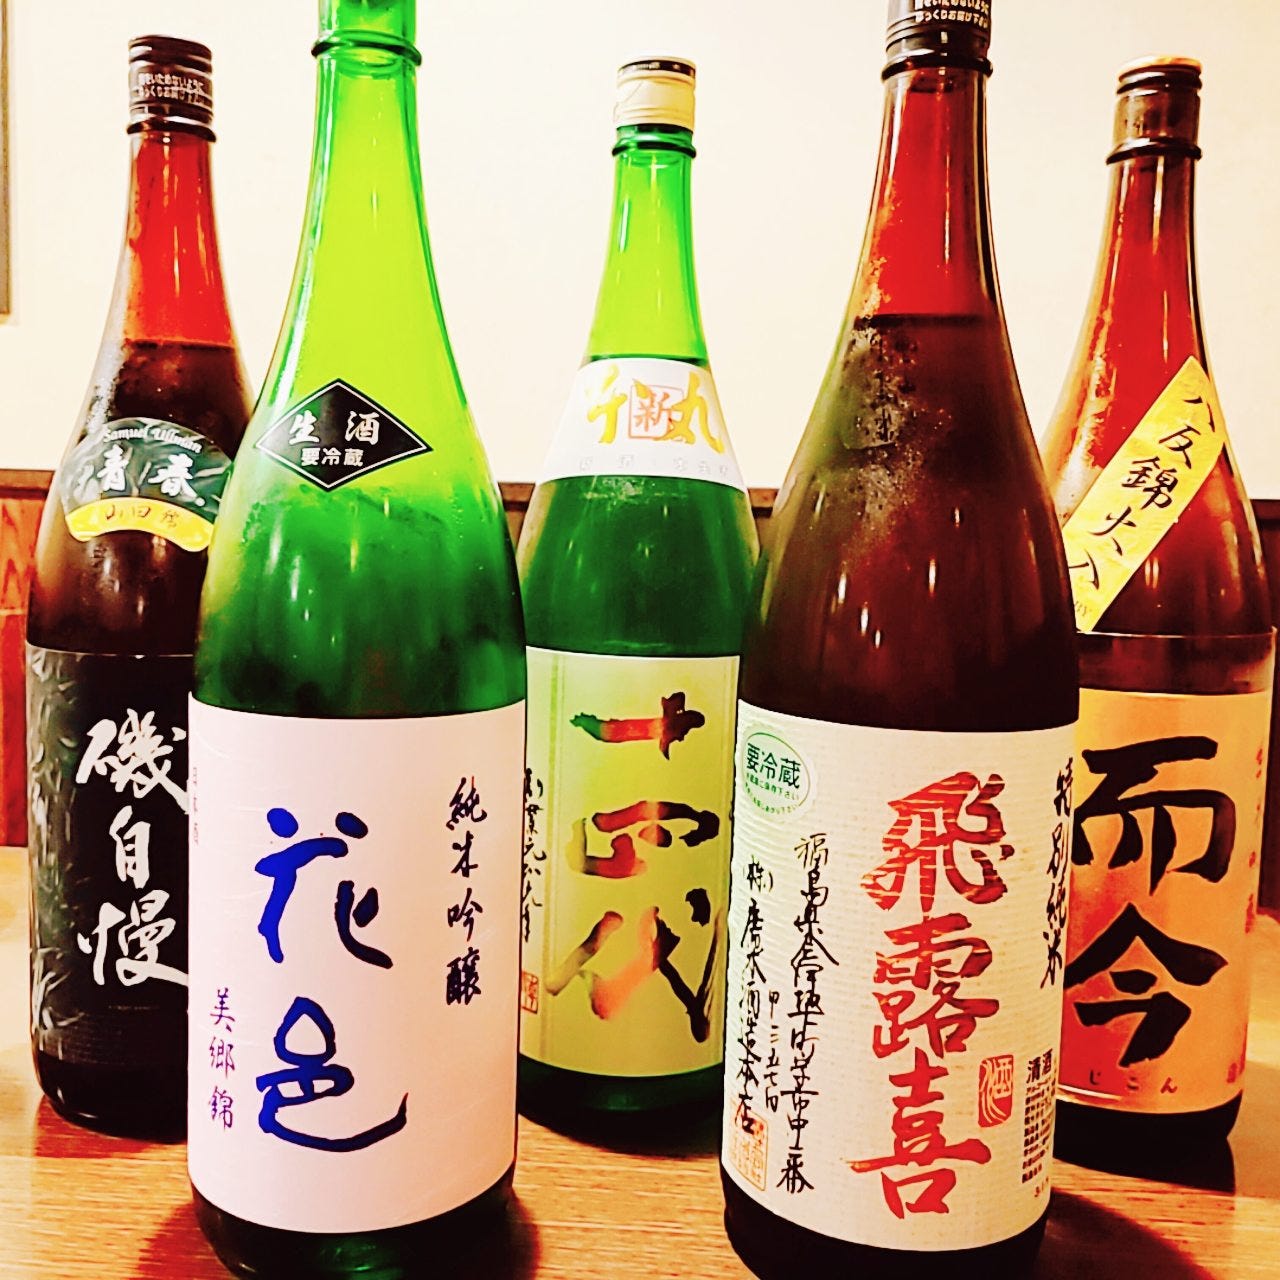 日本酒ケースには全国の有名地酒がずらりと並んでいます。